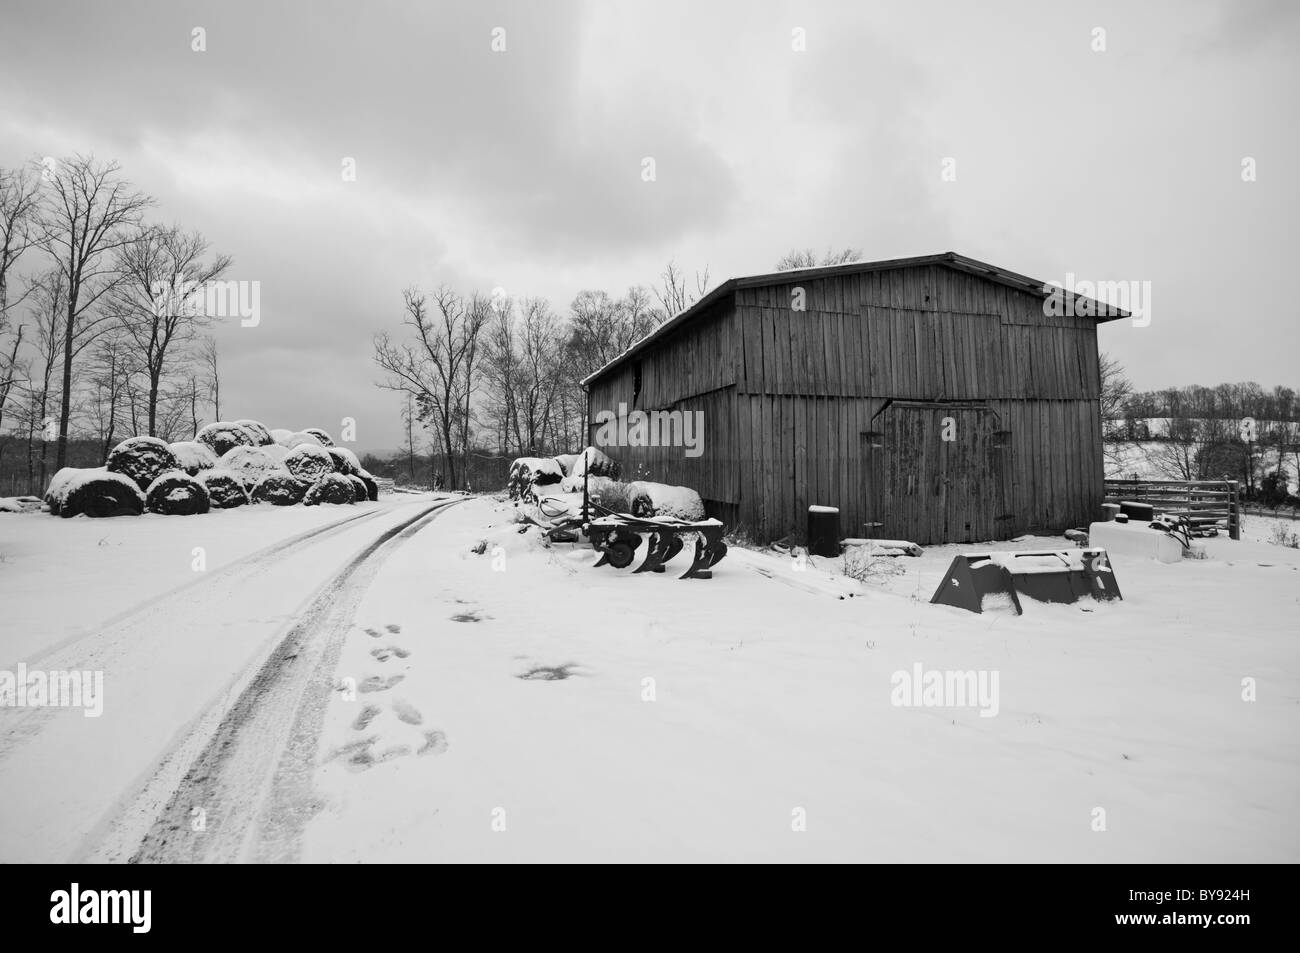 Escena de Invierno de un viejo granero junto a un Farm Road, ambas cubiertas de nieve. Un arado y otras herramientas del comercio son visibles. Foto de stock